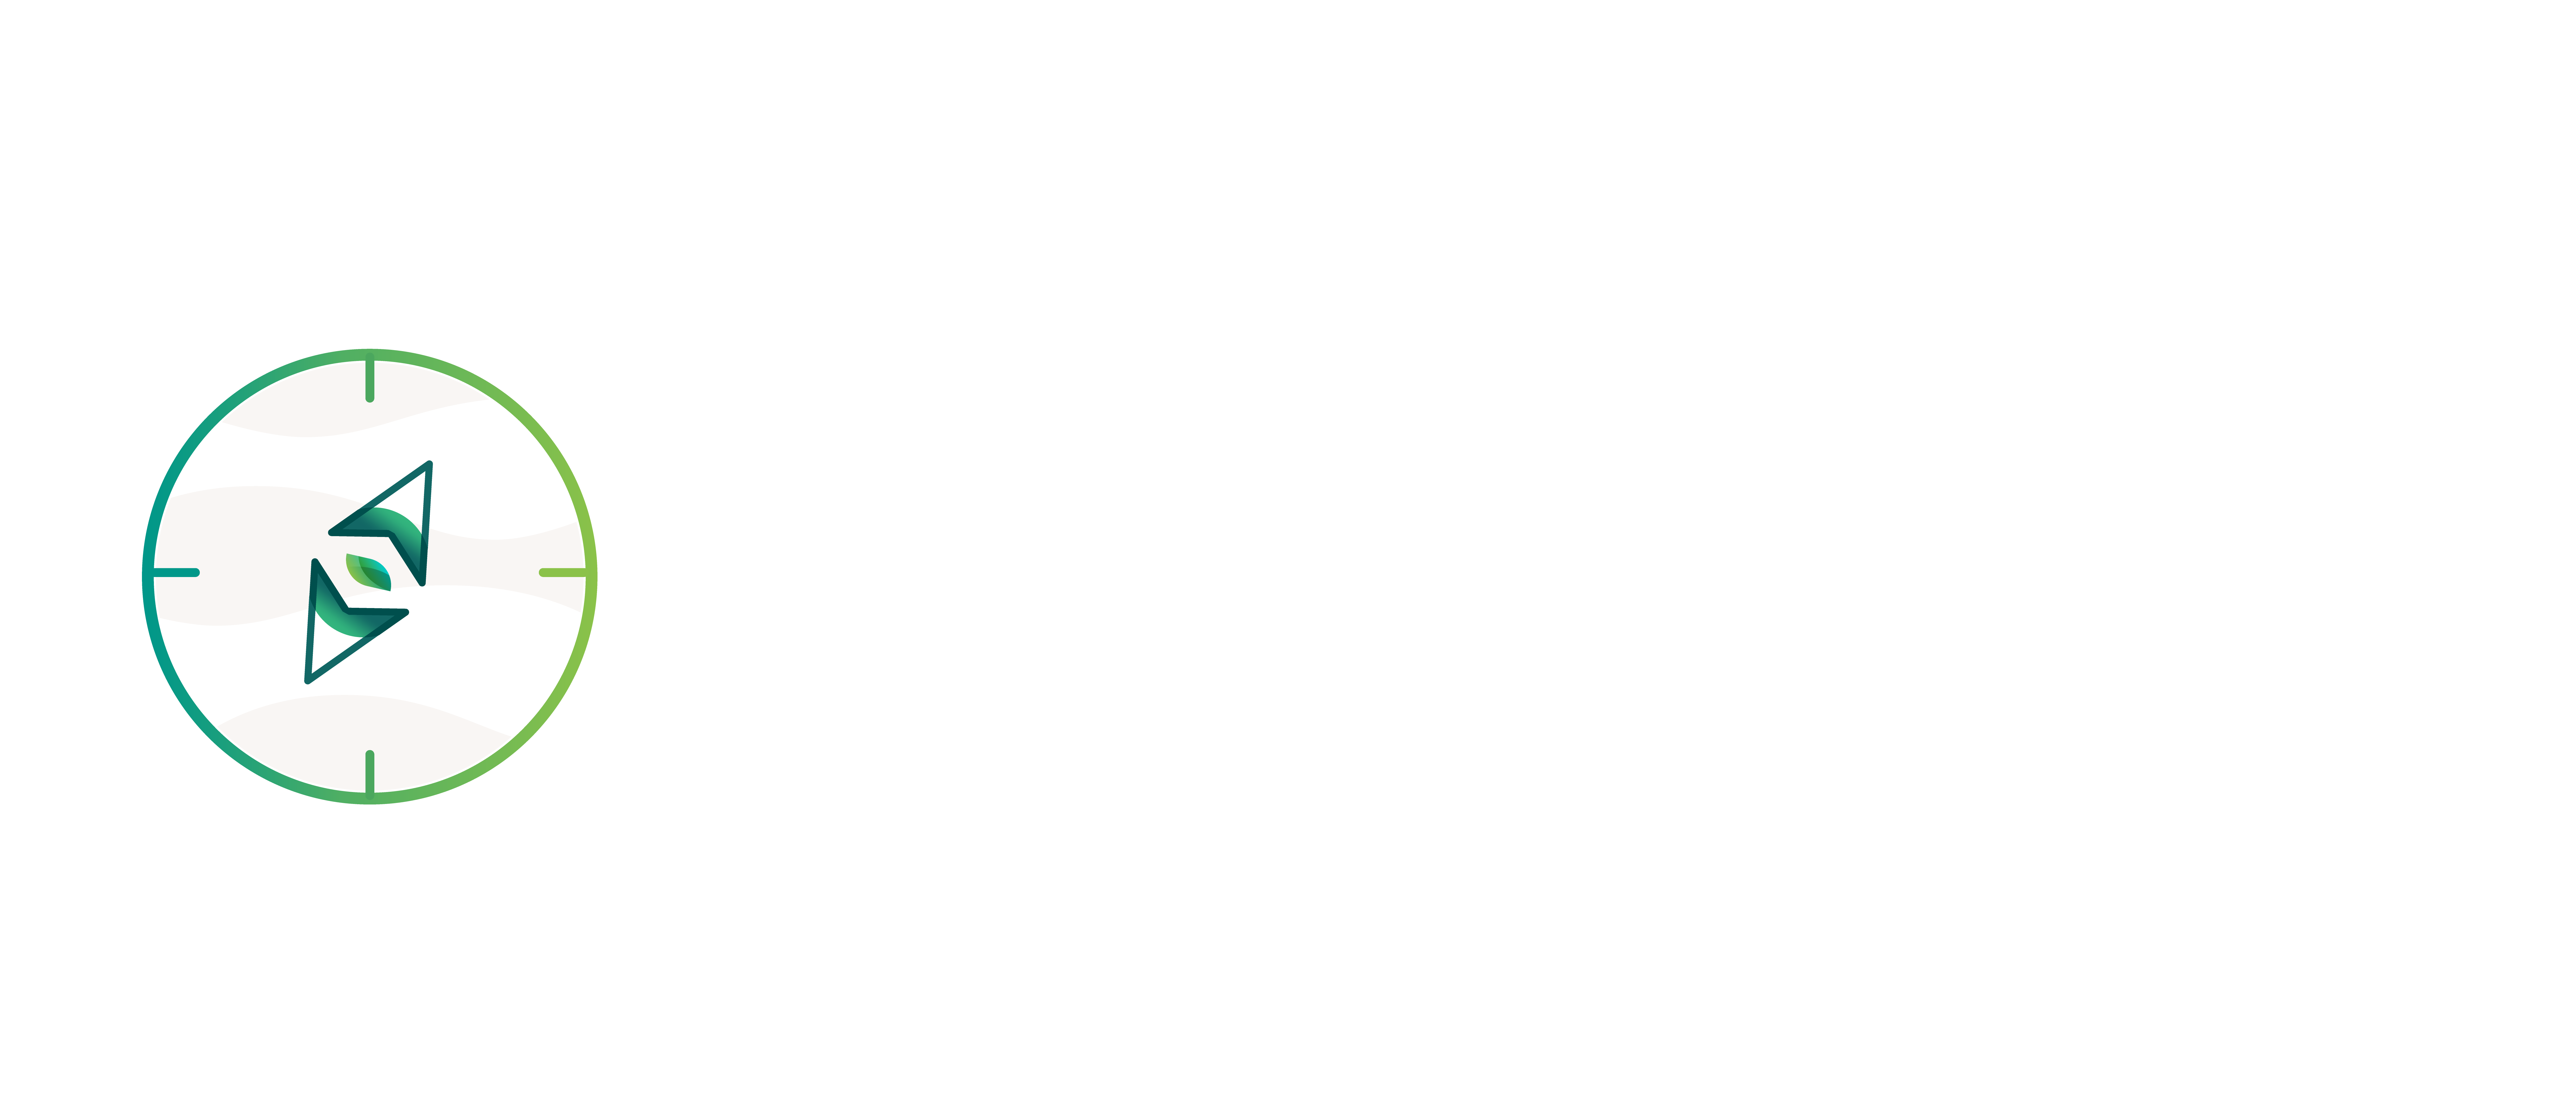 Chasing Circular